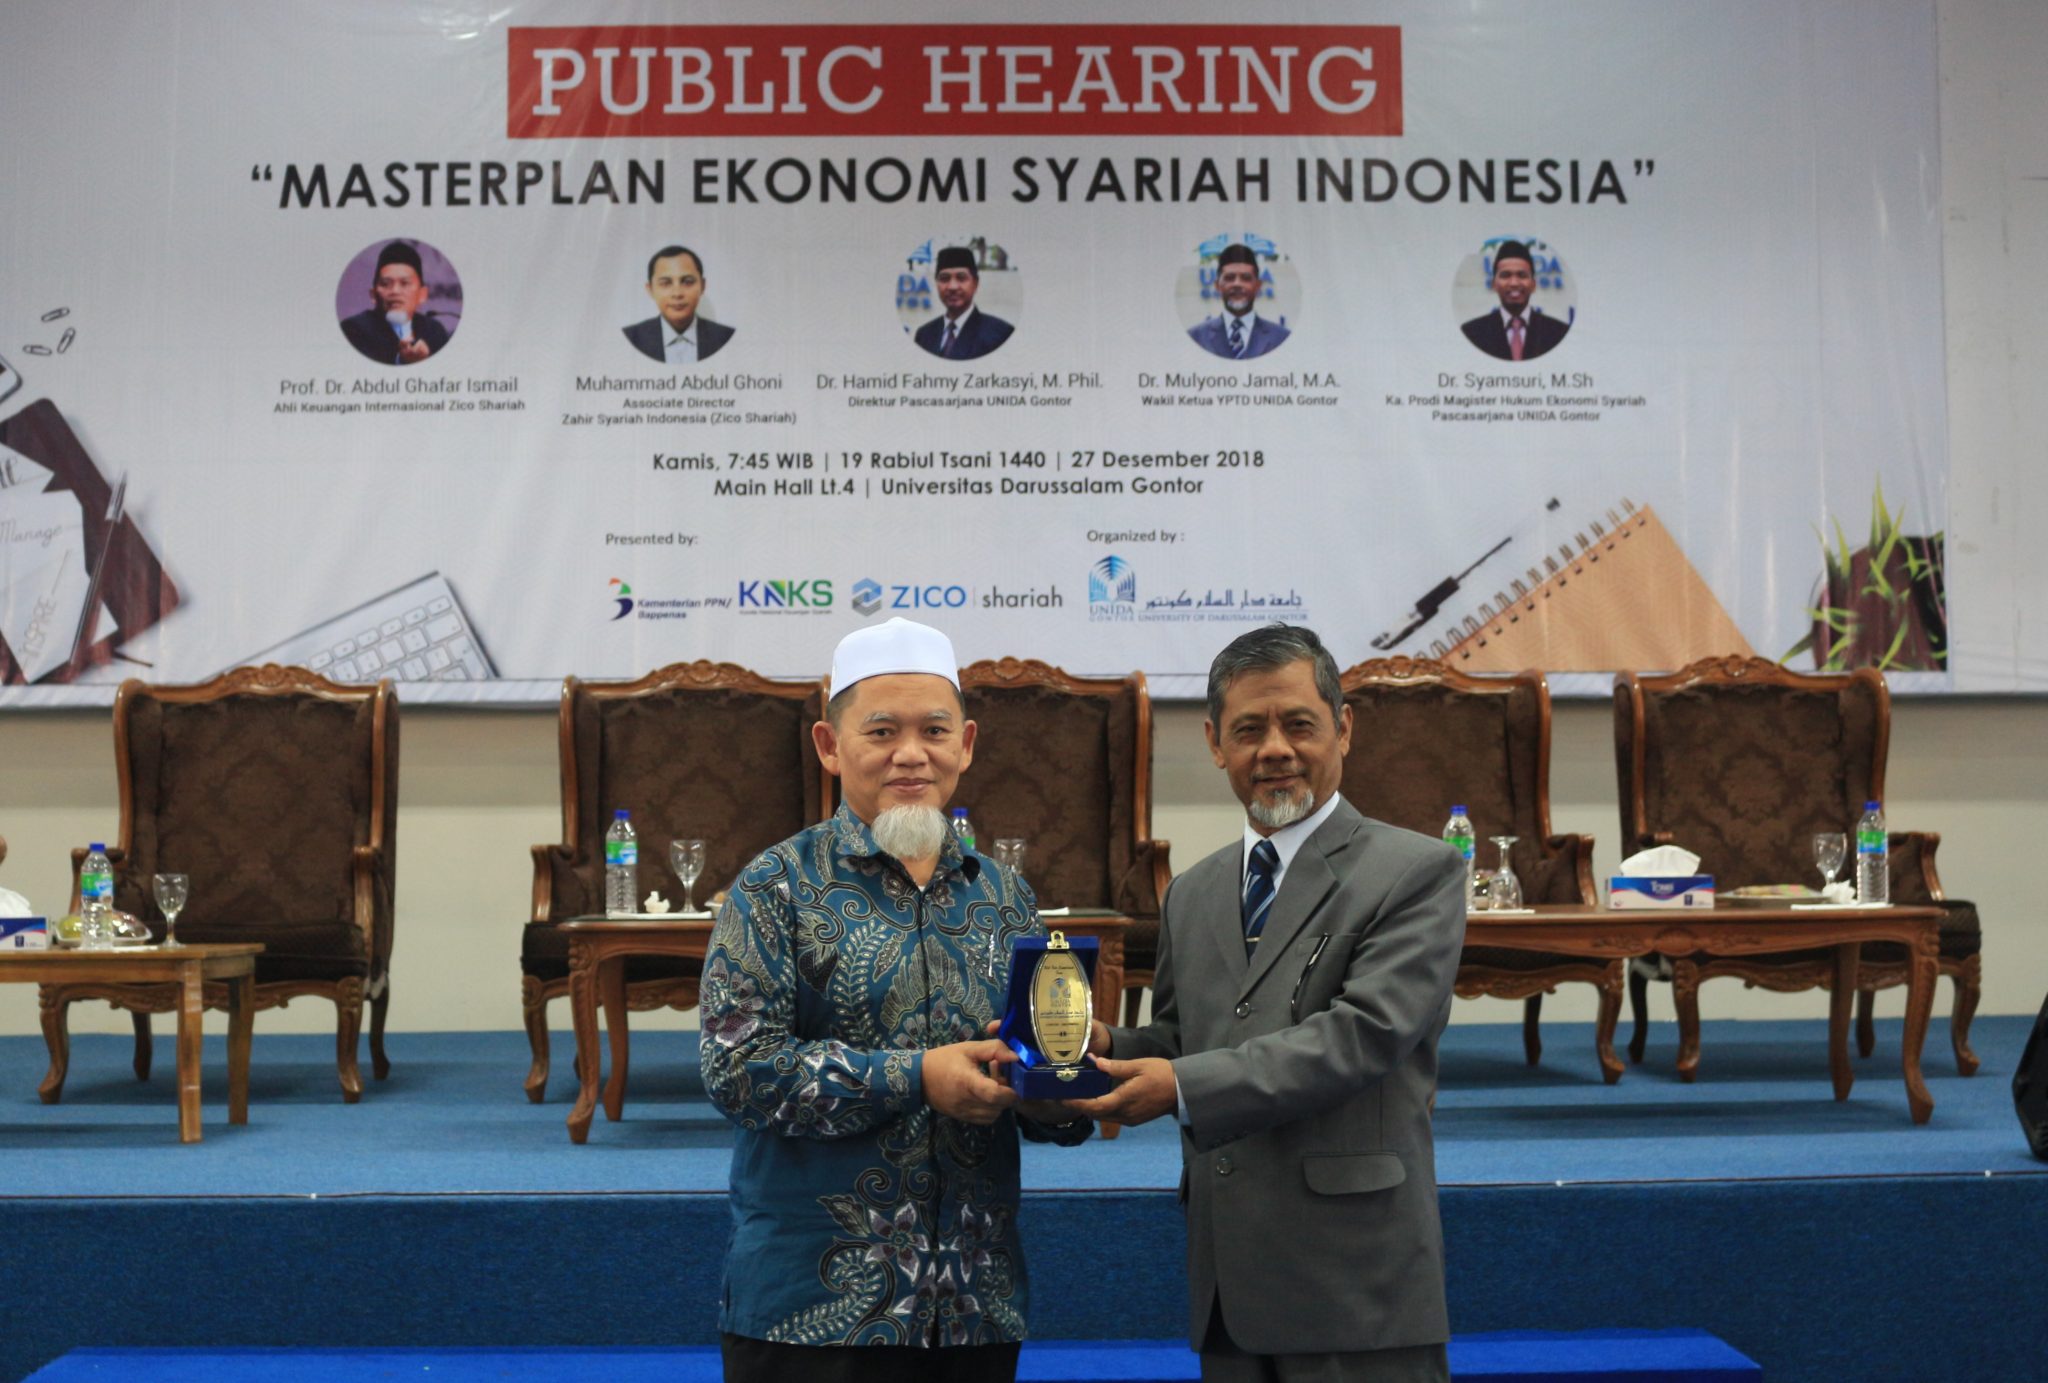 Prof. Abdul Ghafar Ismail : "Apakah Indonesia Hanya Menjadi Konsumer atau Produser dalam Ekonomi Syariah Global?"